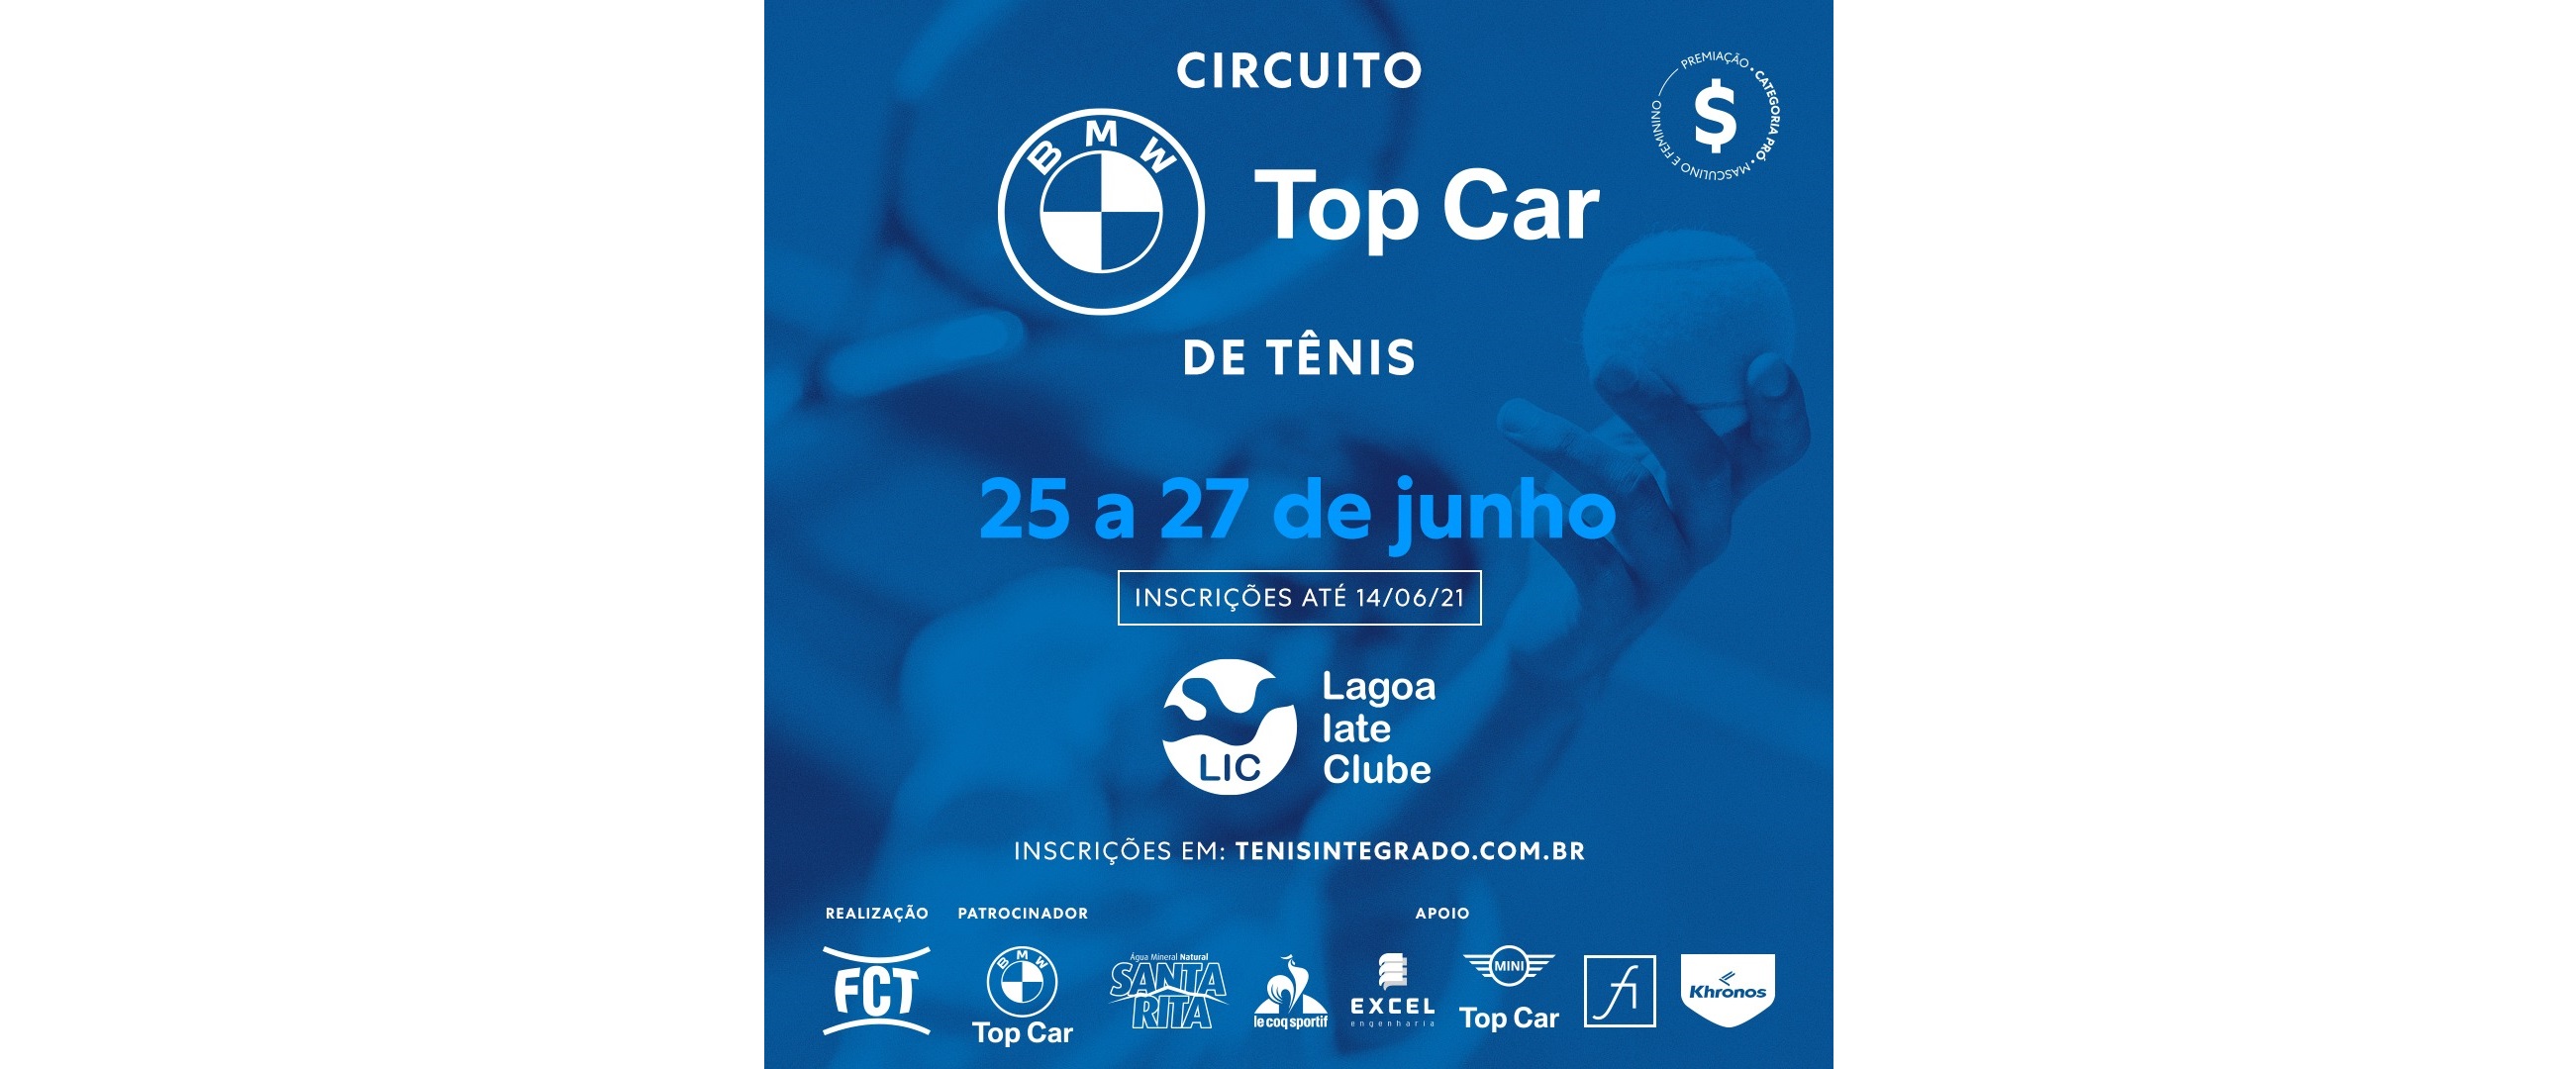 INSCRIÇÕES ABERTAS – CIRCUITO BMW TOP CAR DE TÊNIS (3º ESTADUAL FCT)